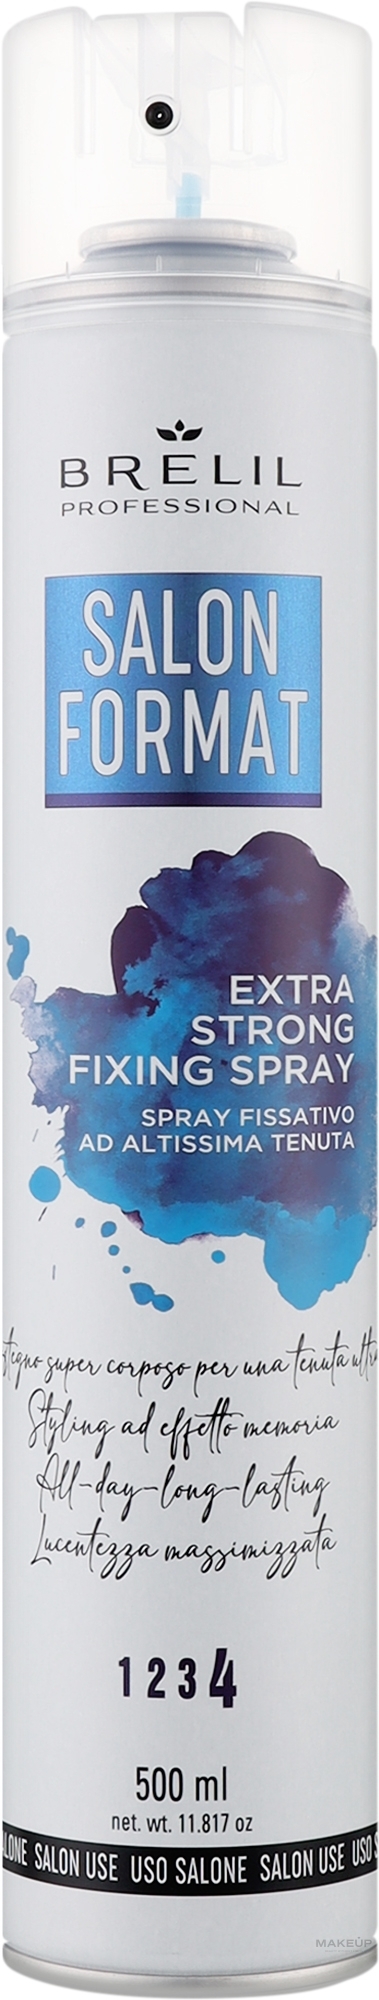 Закріплювальний спрей для волосся екстрасильної фіксації - Brelil Salon Format Extra Strong Fixing Spray — фото 500ml